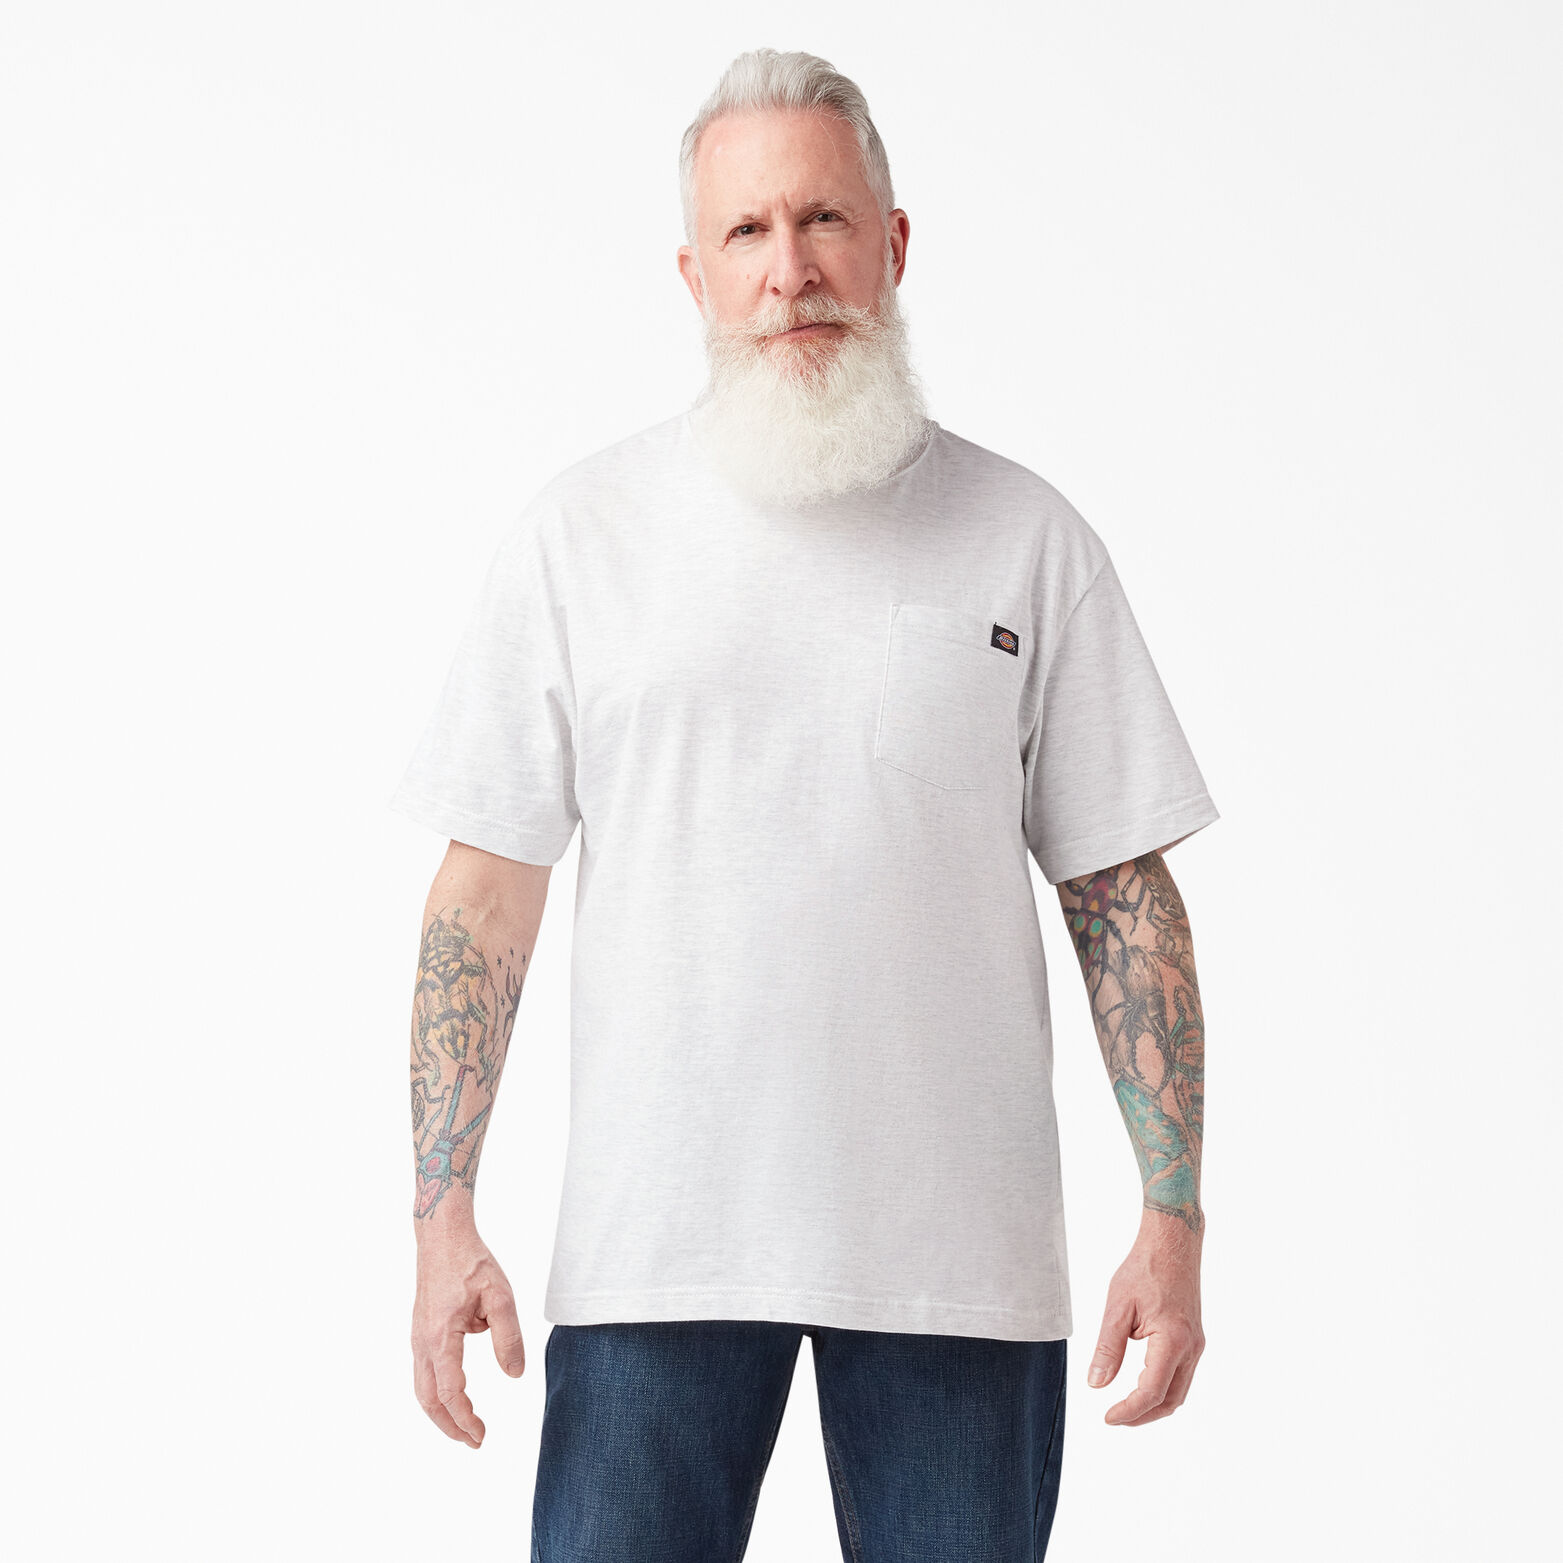 Men's Suit, Men's Maple Leaf Graphic Short Sleeves T-shirt